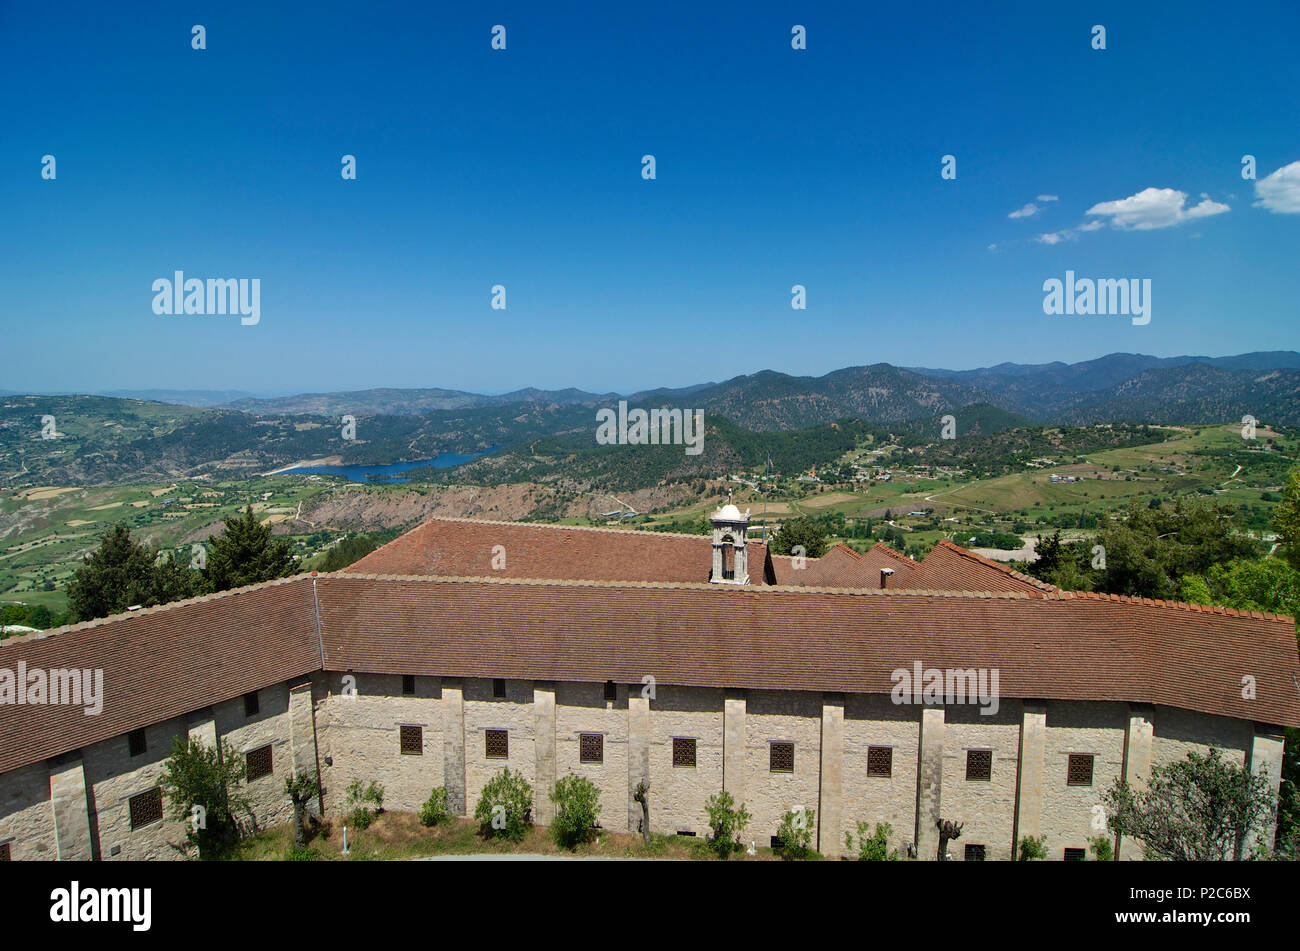 View over Chrysoroyiatissa Monastery in Pano Panagia, Troodos mountains, Cyprus Stock Photo